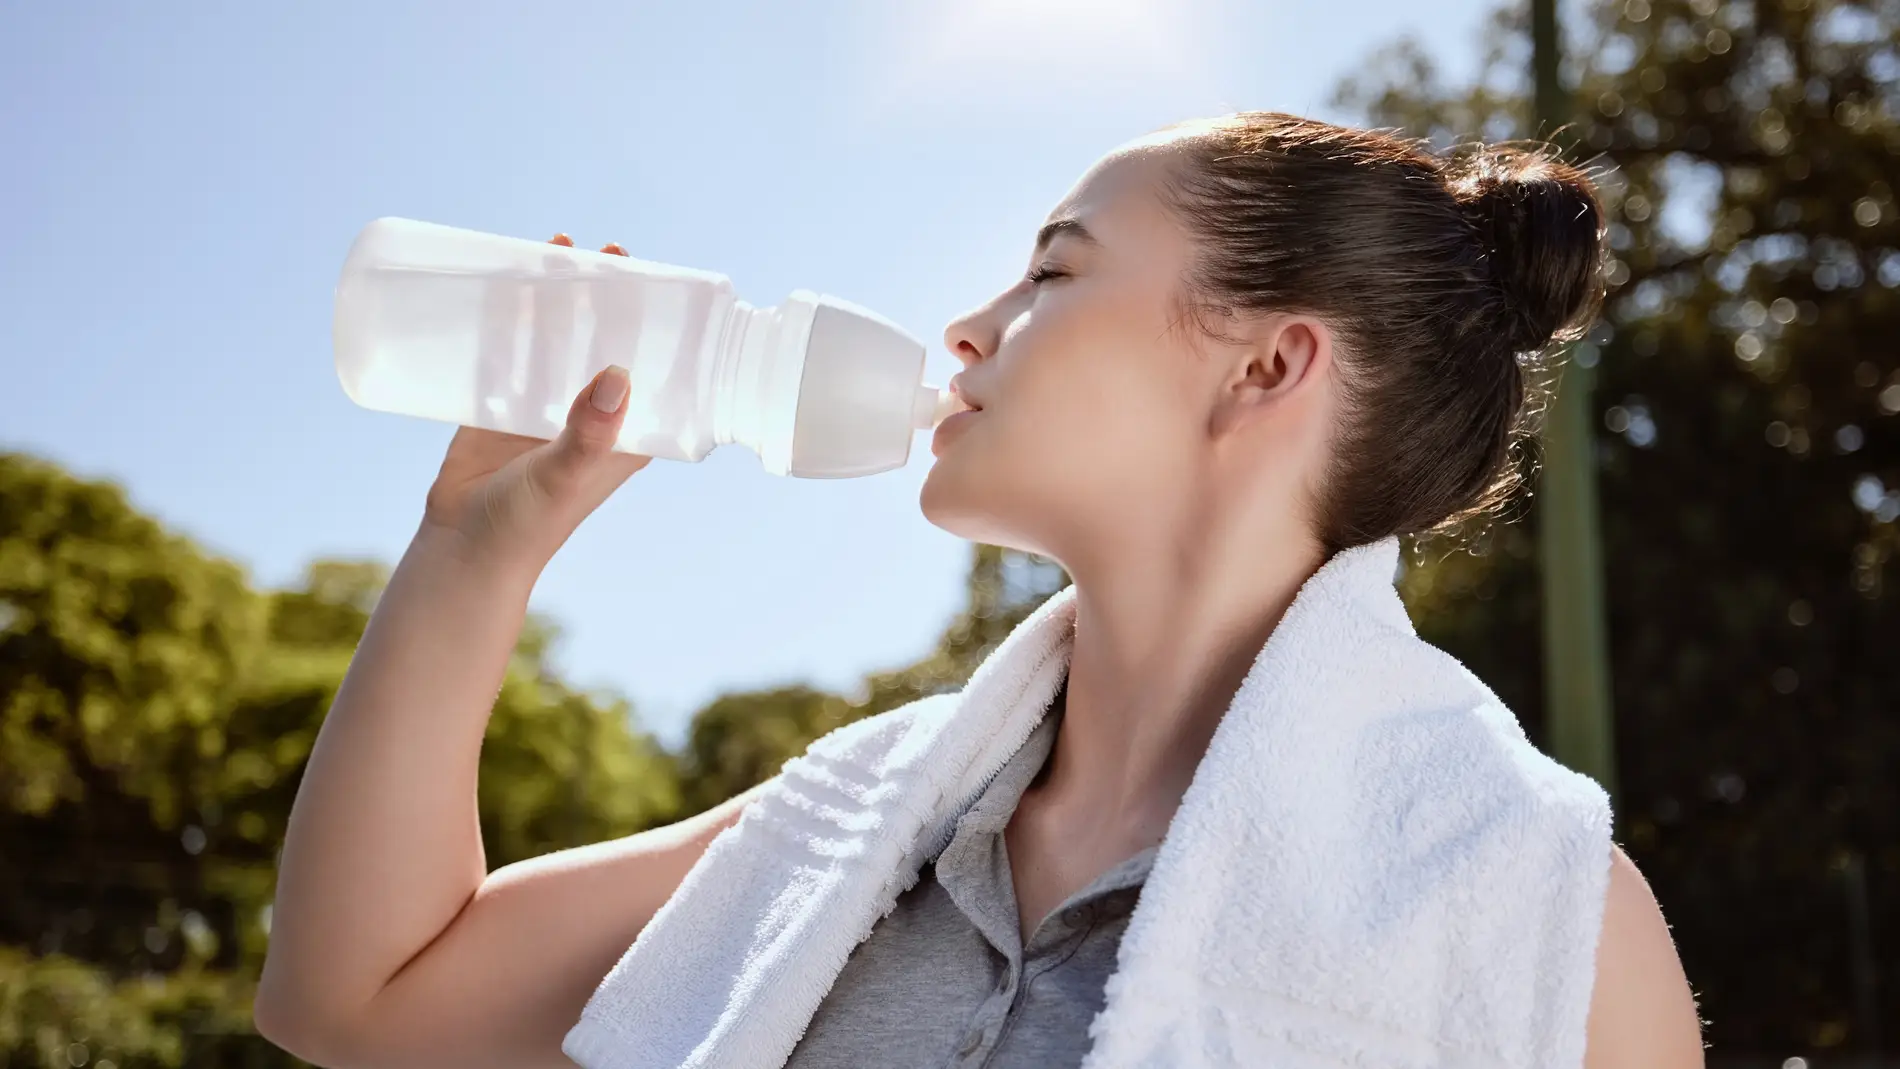 Tomar agua congelada después de hacer deporte en verano: más dañino de lo que piensas, según un experto